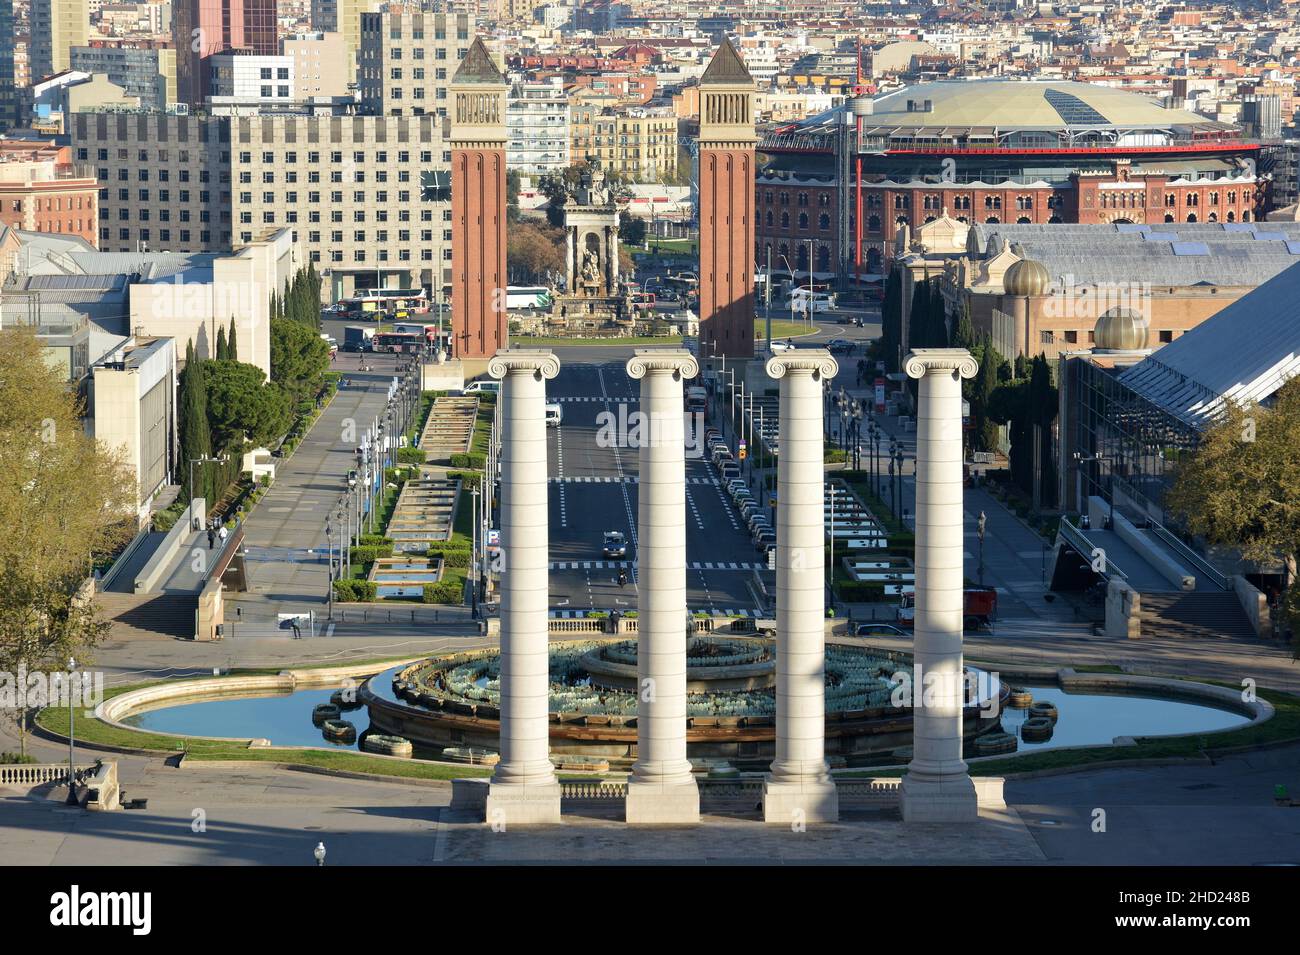 Espagne, Barcelone, la place de l'Espagne, les colonnes venitien, le centre commercial de Las Arenas vu du Musée national d'Art de Catalogne. Banque D'Images